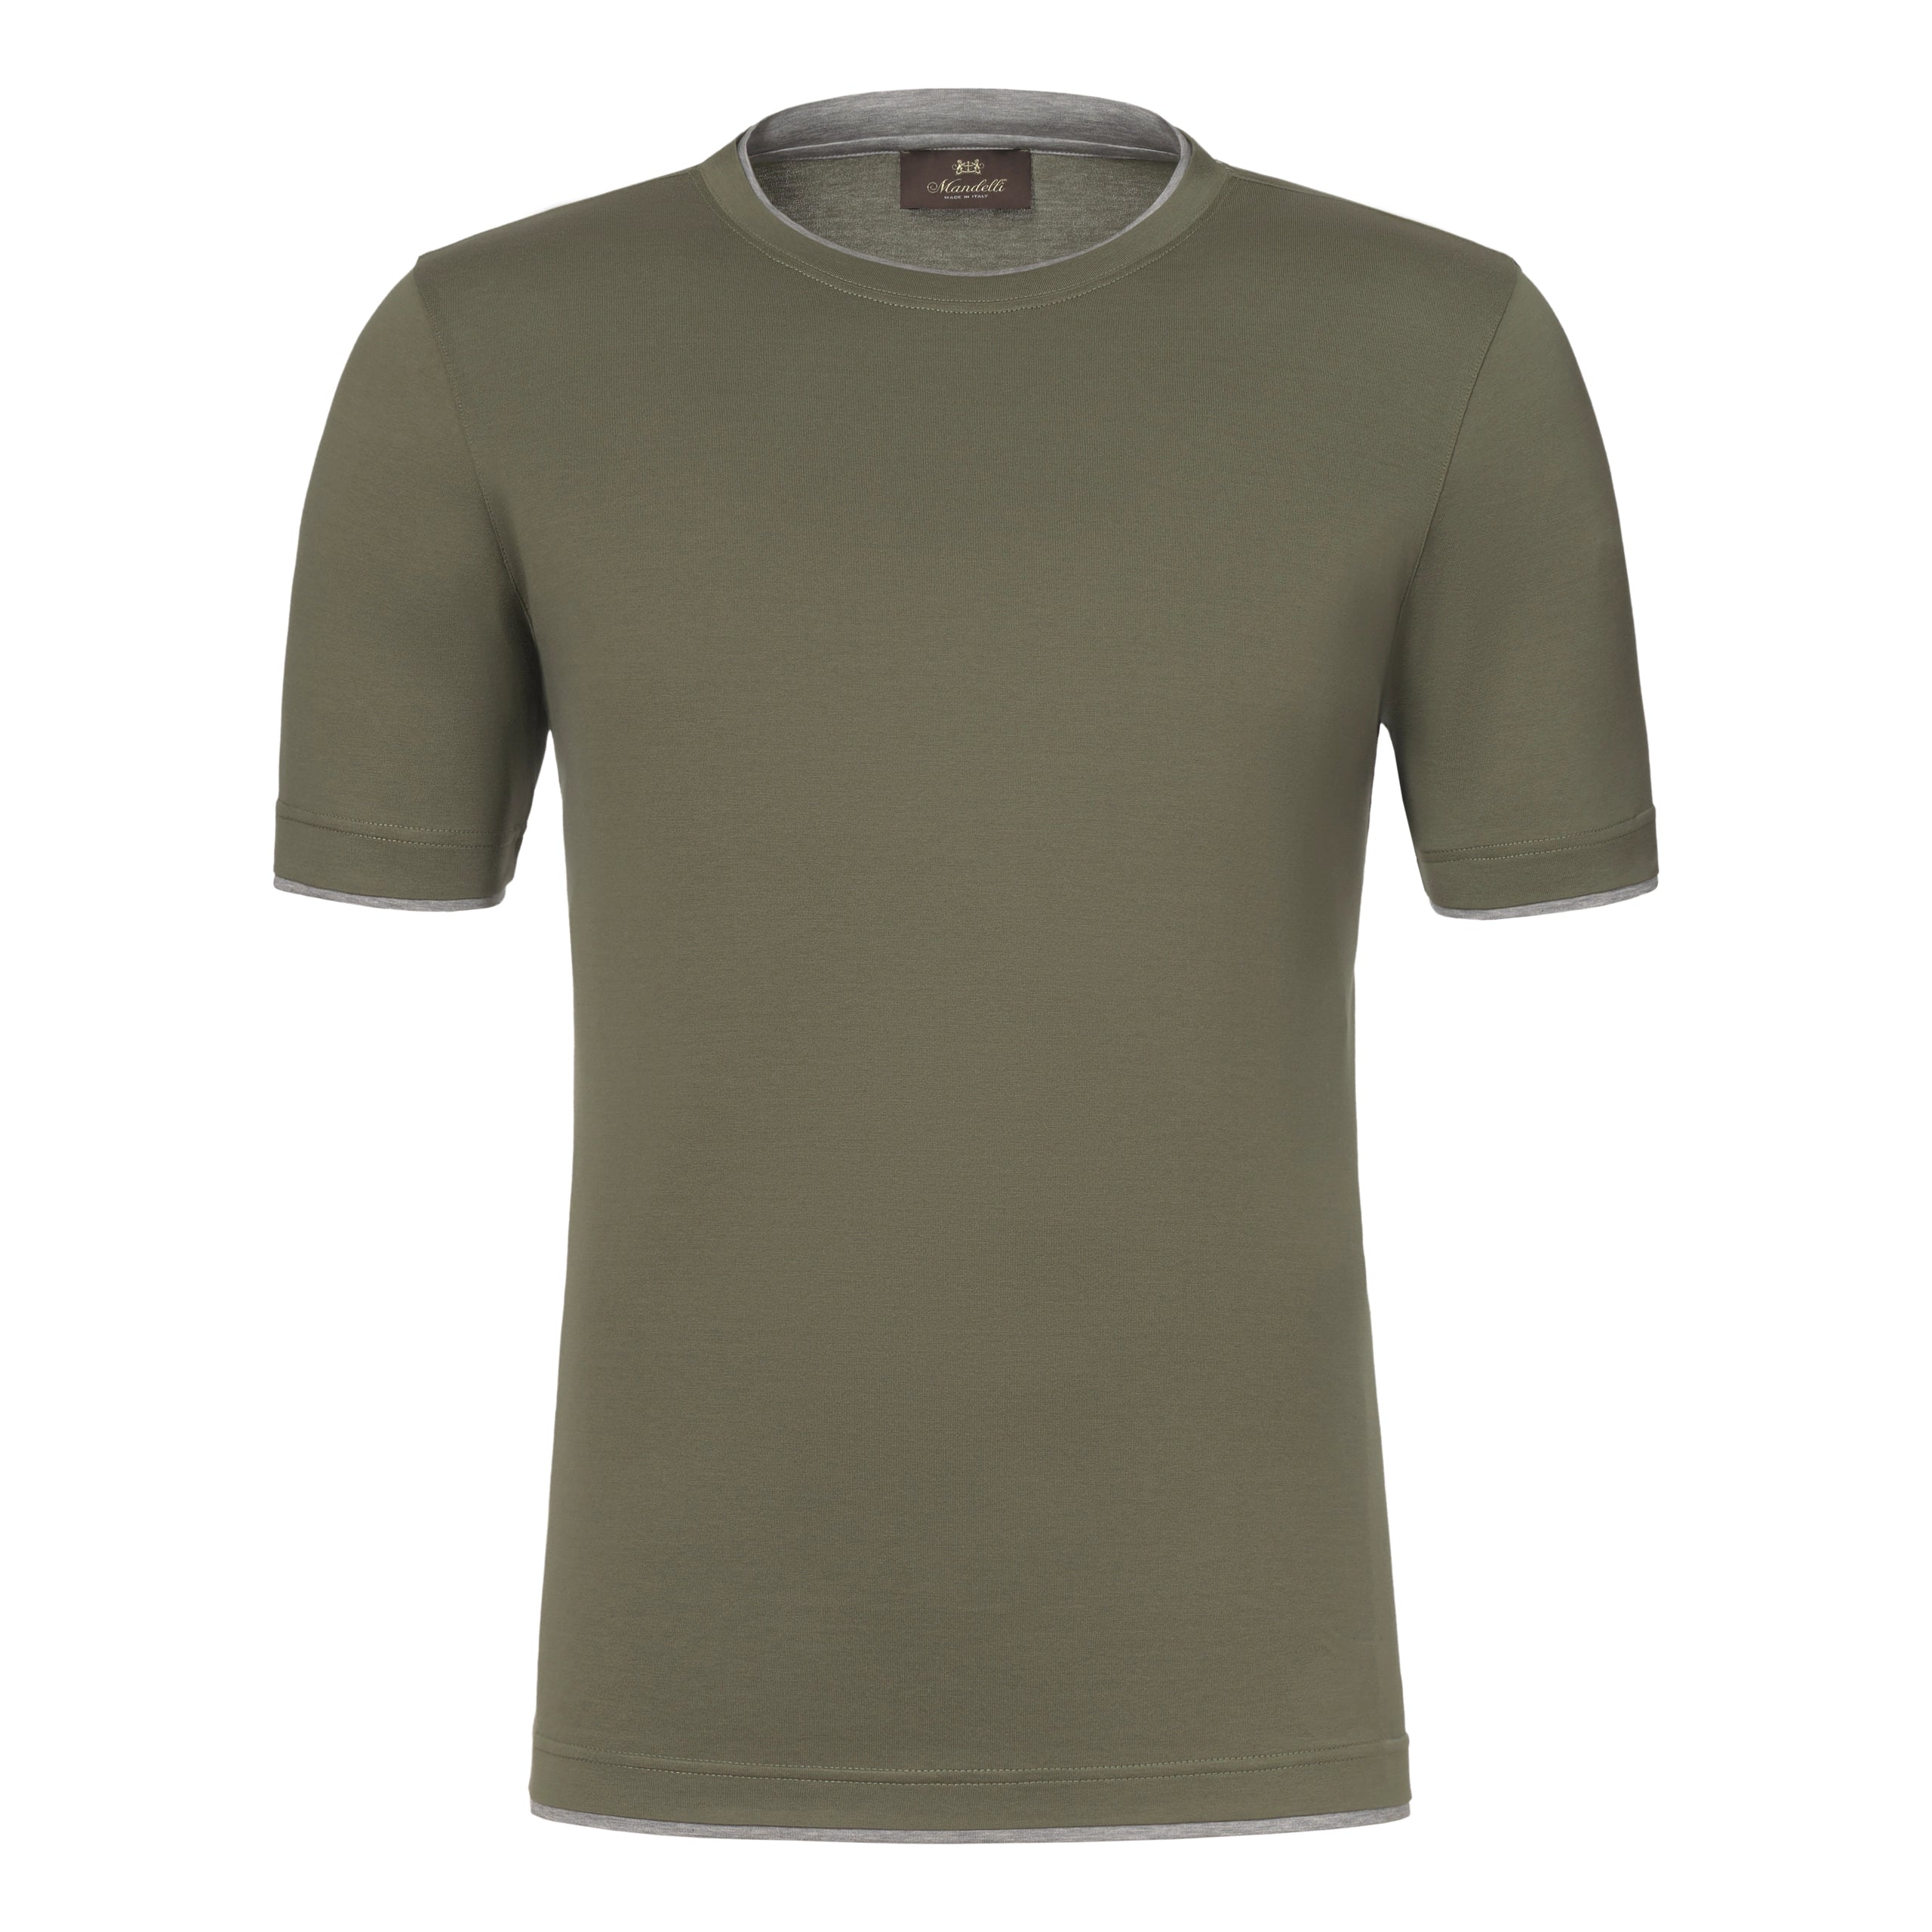 Baumwoll-T-Shirt in Grün mit grauem Streifen